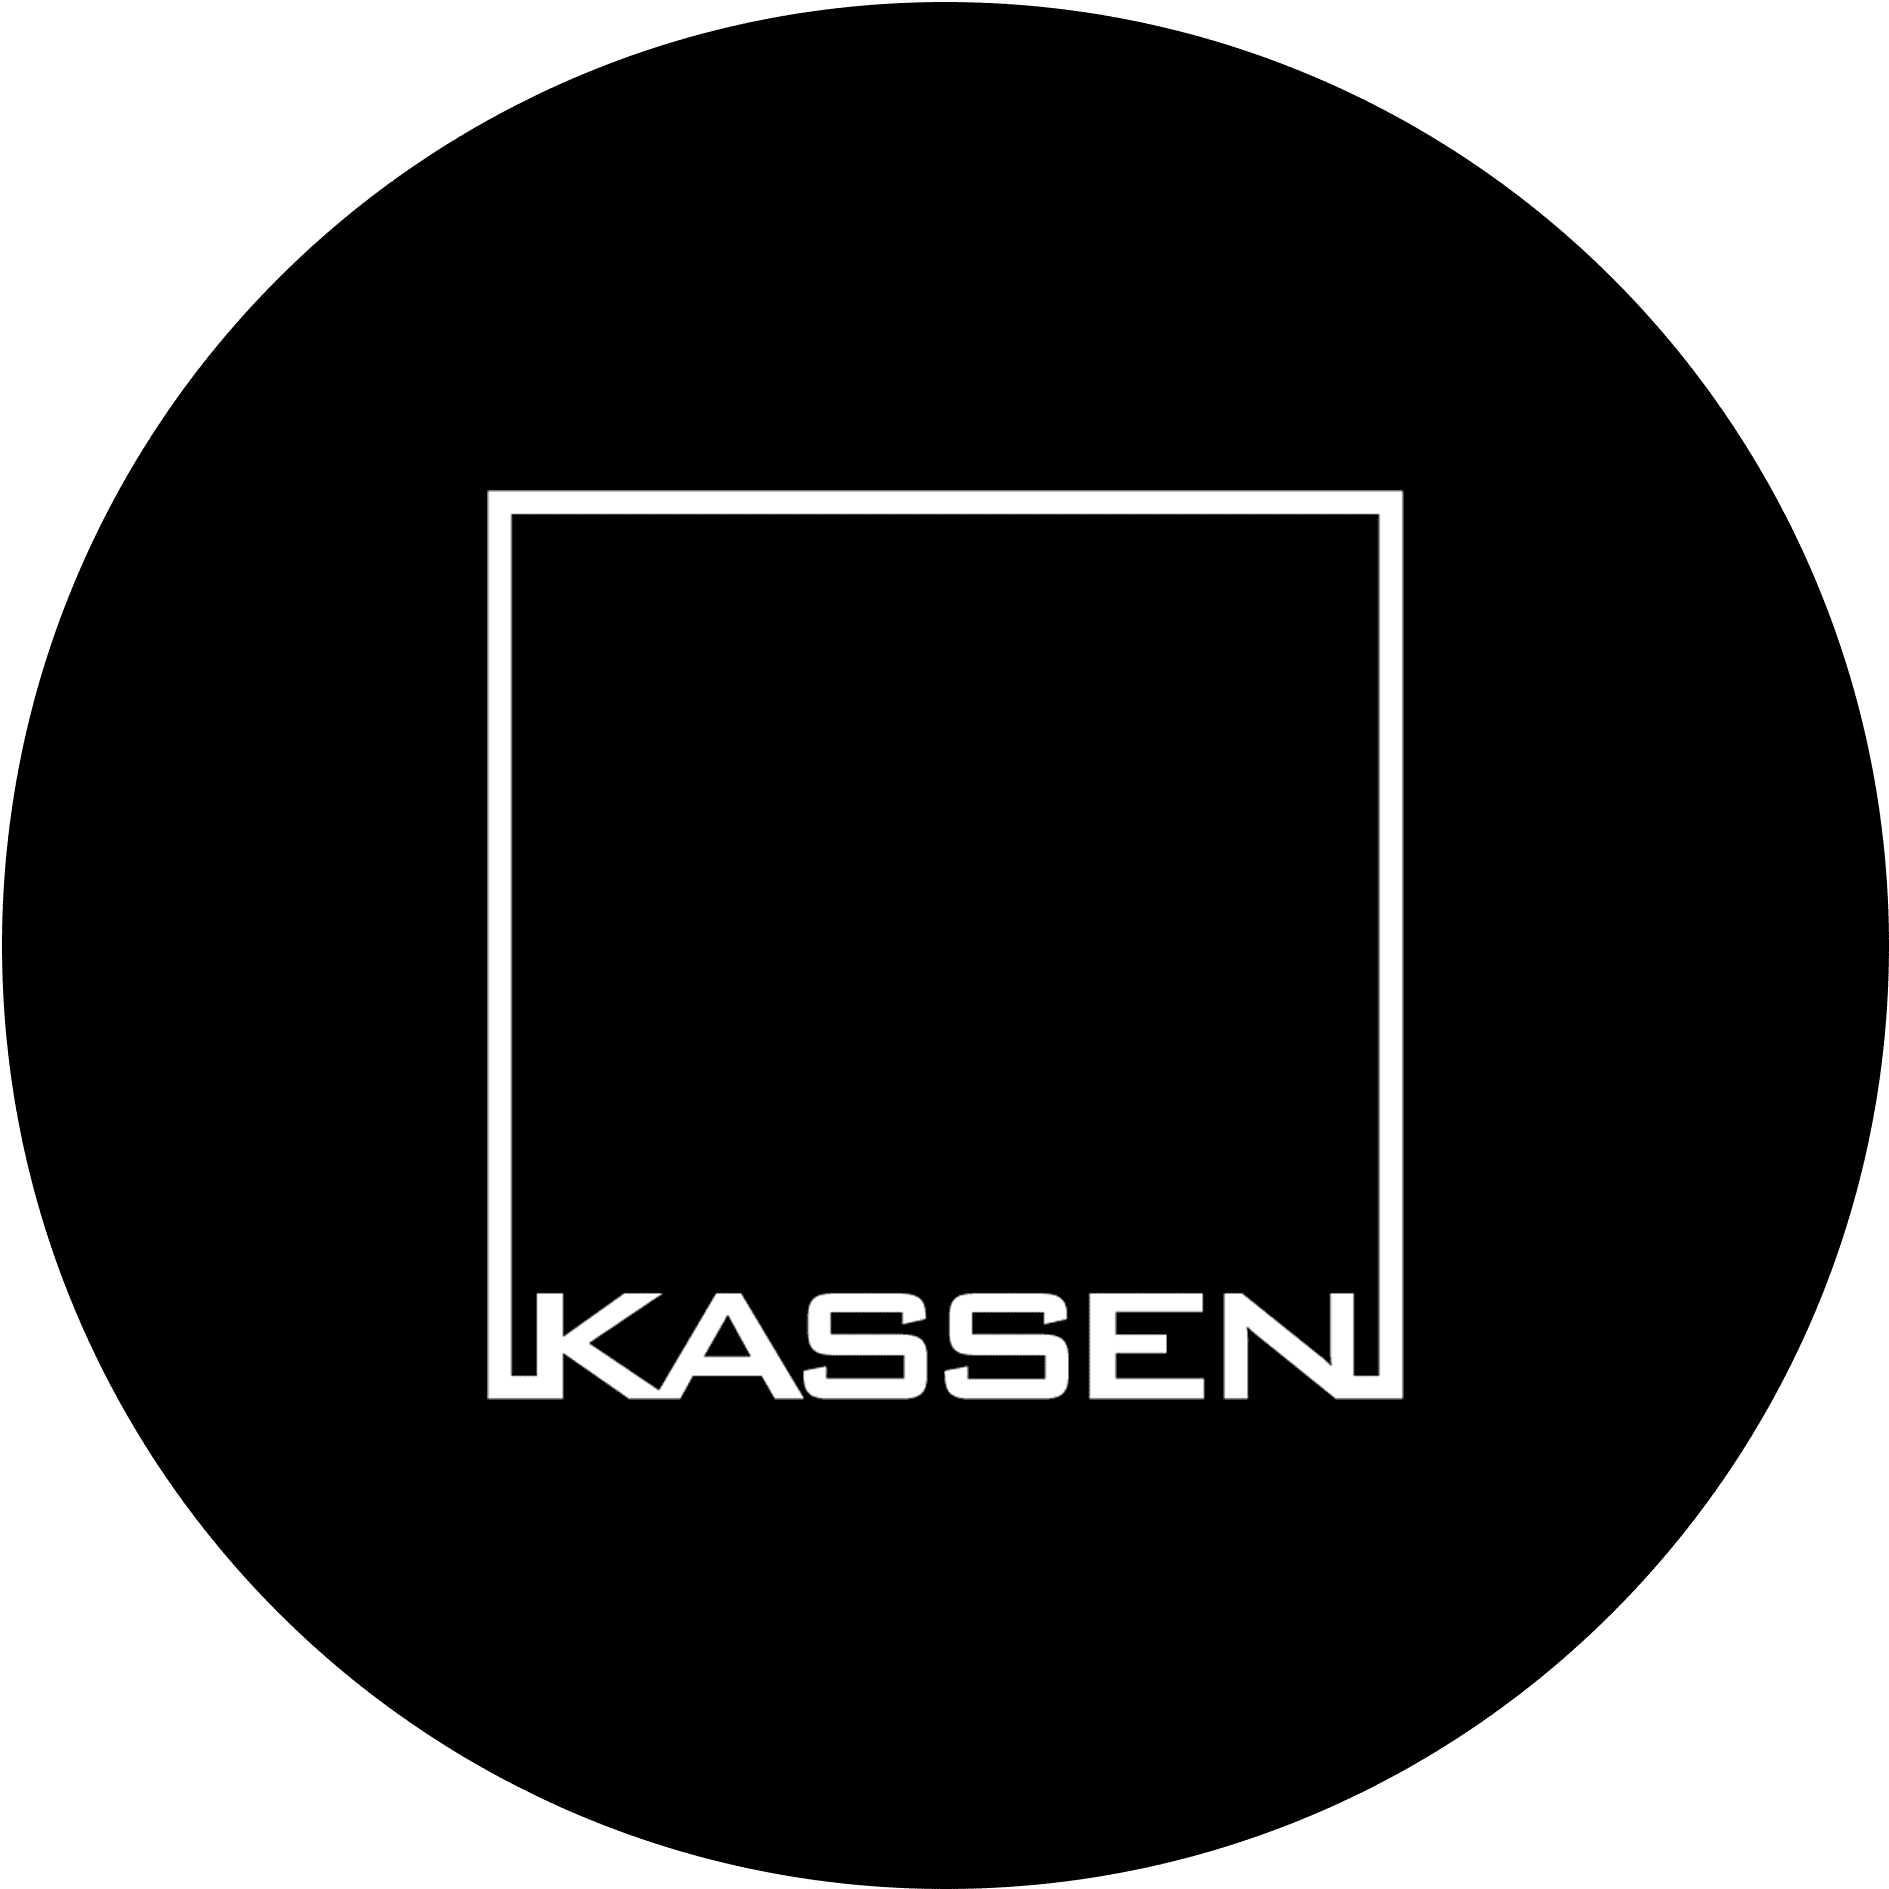 Kassen_Logo_Circle